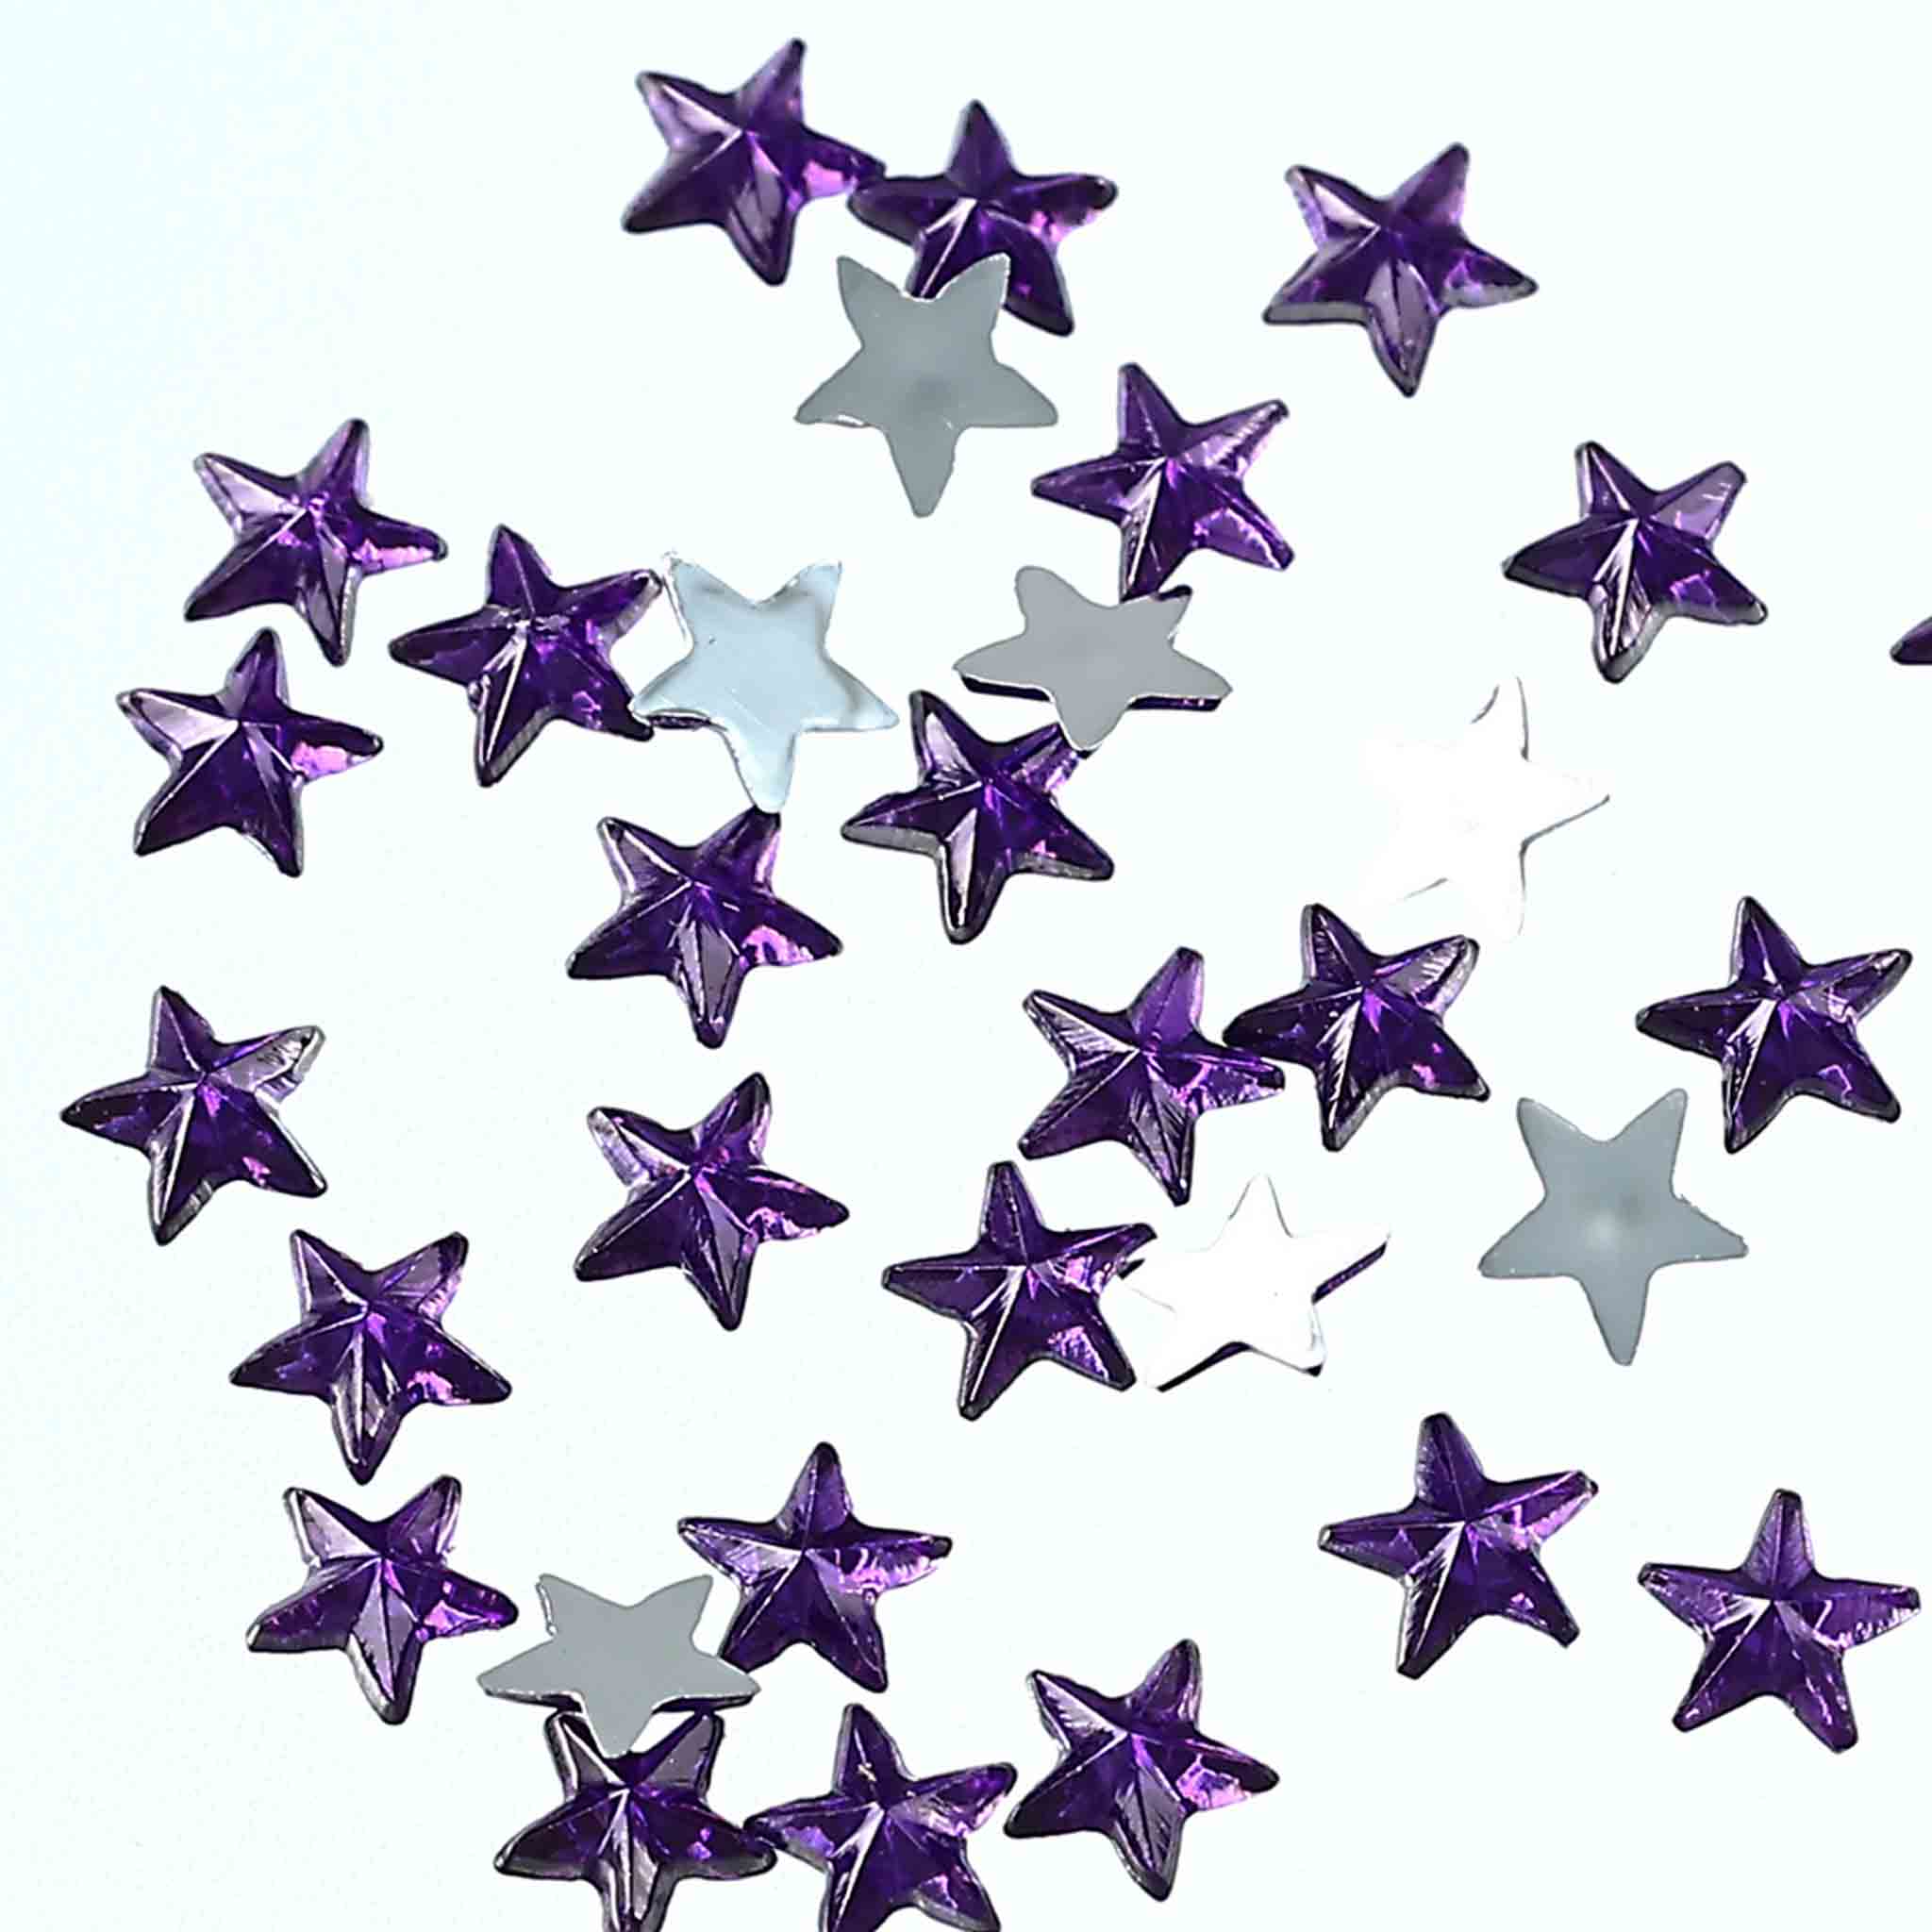 ラインストーン 星 3mm 紫 9000粒 プラ製 立体 ネイル レジン デコ ハンドメイド 手芸 パーツ BD3487 2